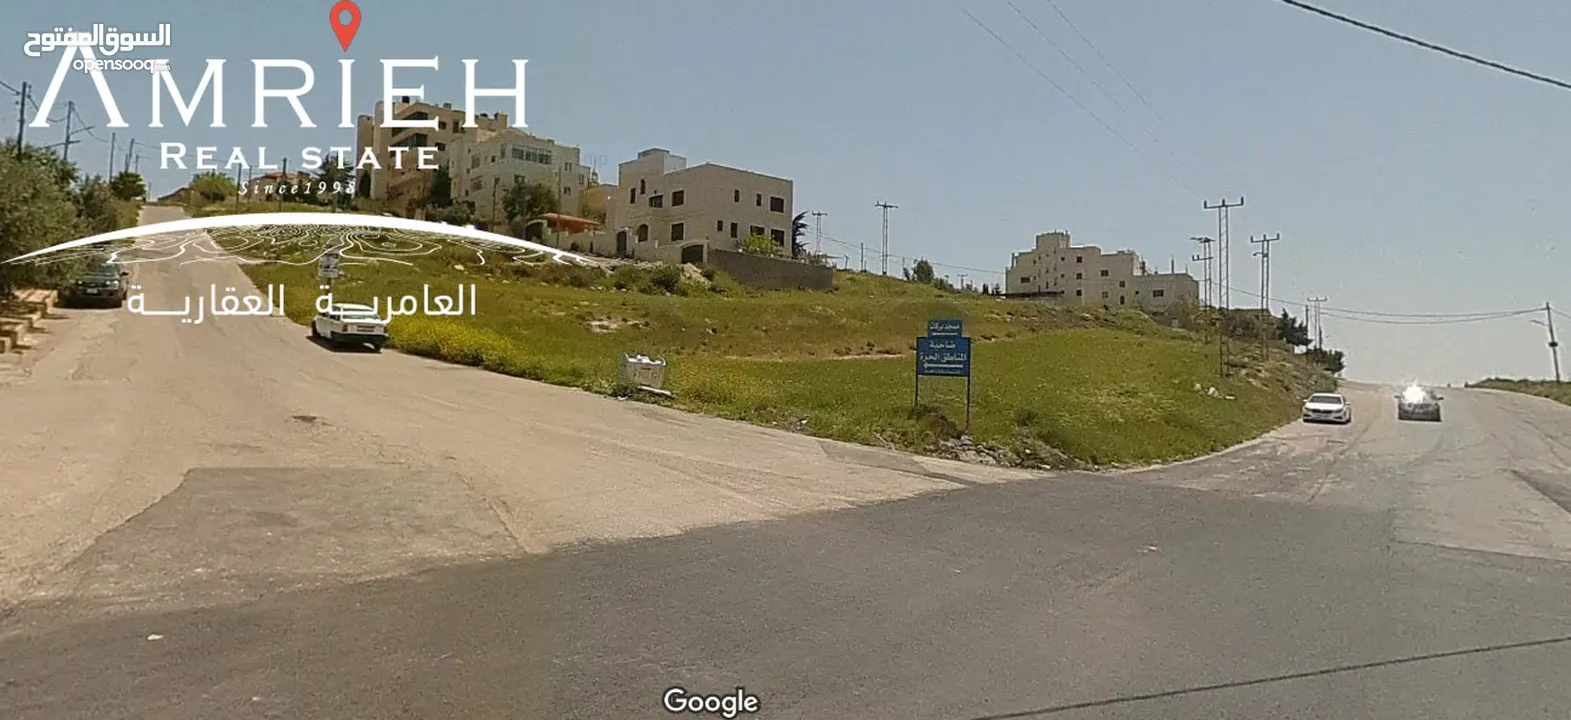 ارض سكنية للبيع في ام رمانة ناعور / قرب مسجد بركات (المناطق الحره)